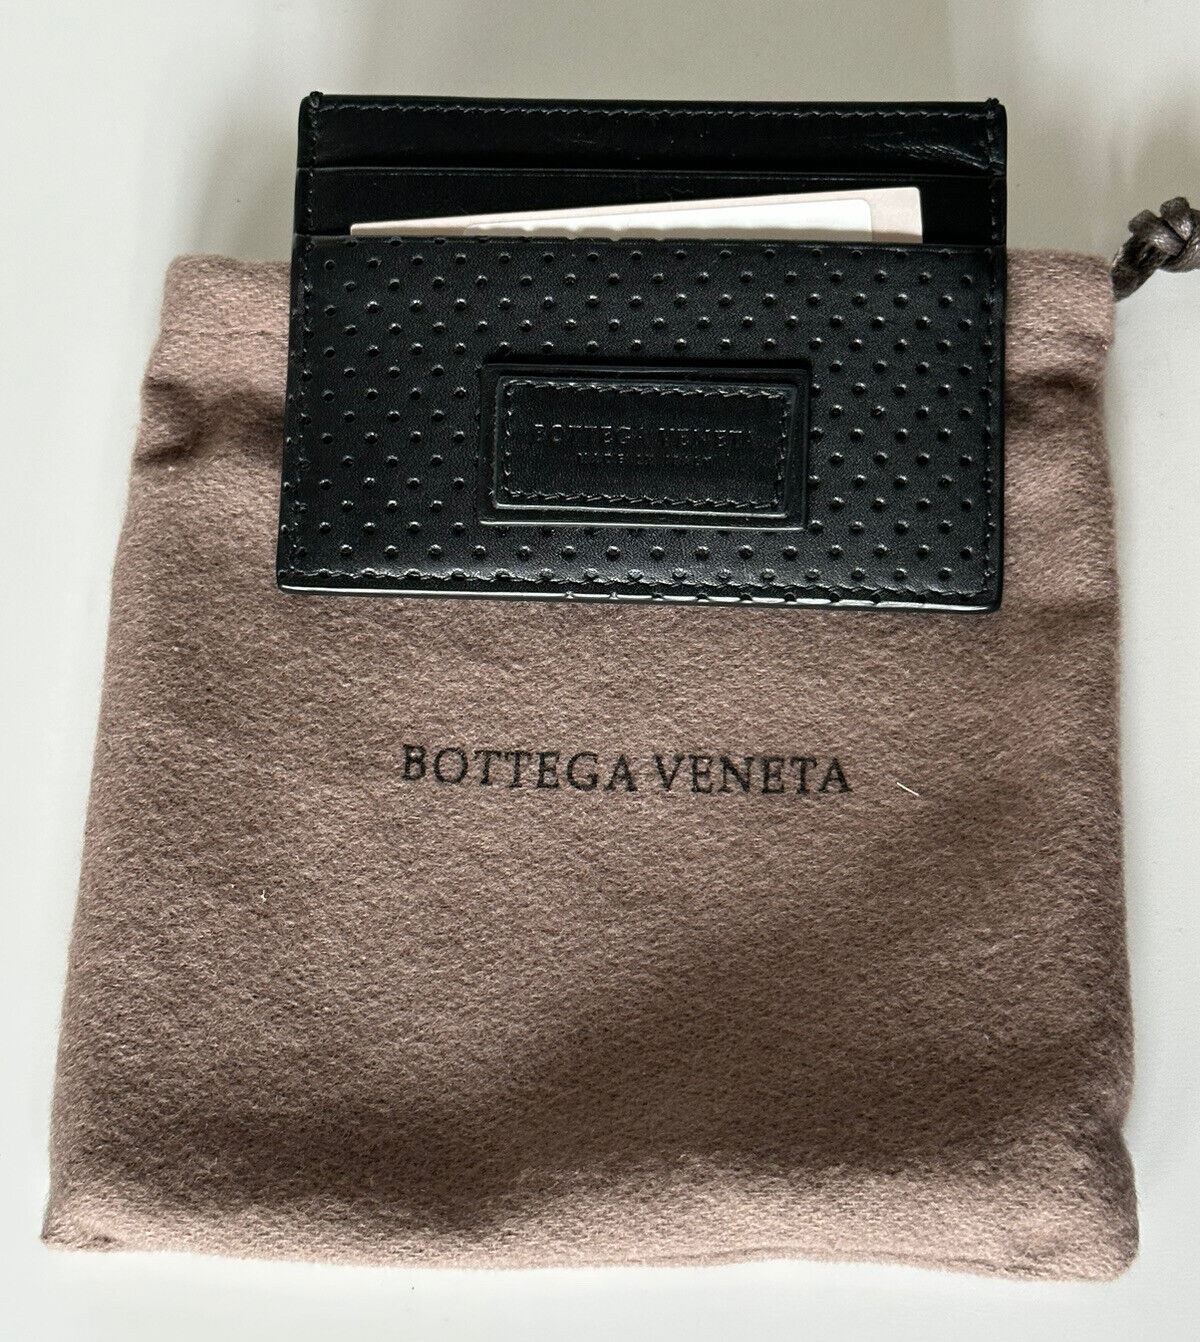 Neu mit Etikett: 250 $ Bottega Veneta Leggero Herren-Kartenetui aus Leder Schwarz 551811 Italien 